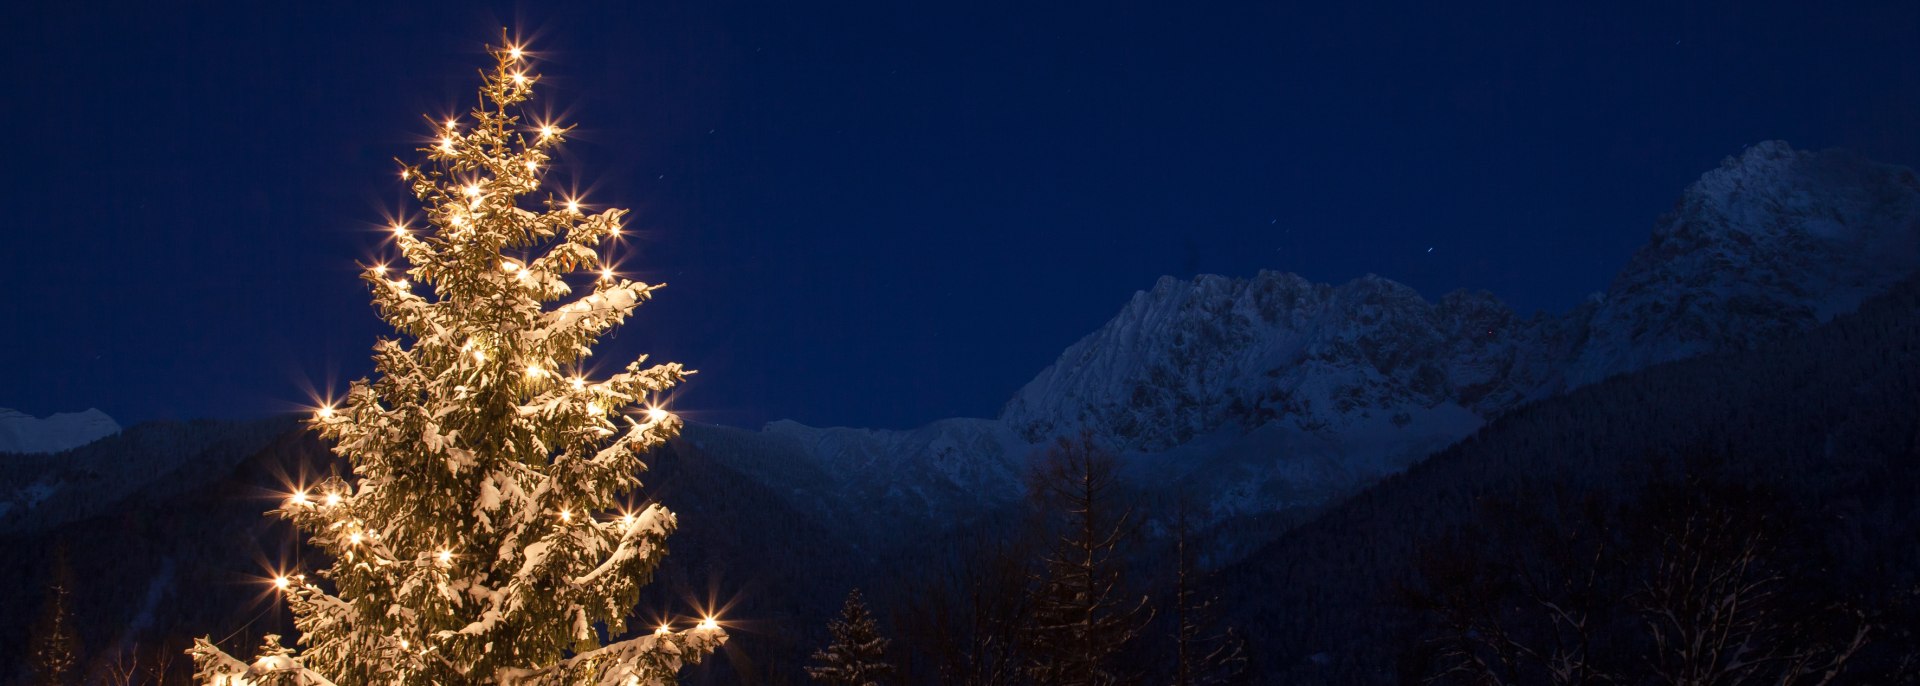 Adventszeit unterm Karwendel - Christbaum im Schnee, © Alpenwelt Karwendel | Hubert Hornsteiner